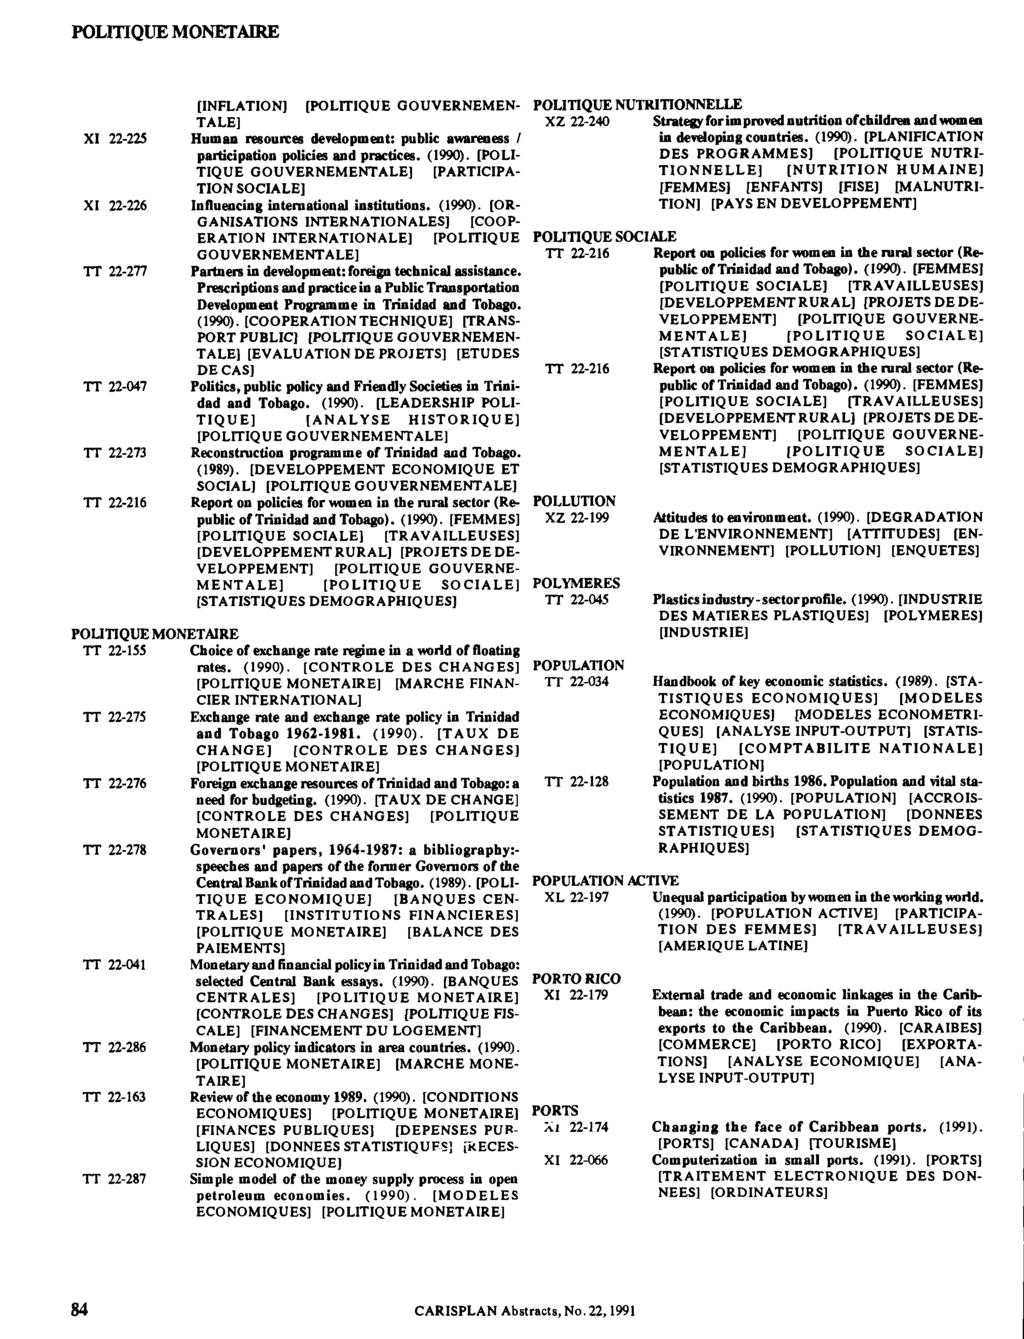 POLITIQUE MONETAIRE [INFLATION] [POLITIQUE GOUVERNEMEN TALE] XI 22-225 Human resources development: public awareness / participation policies and practices. (1990).